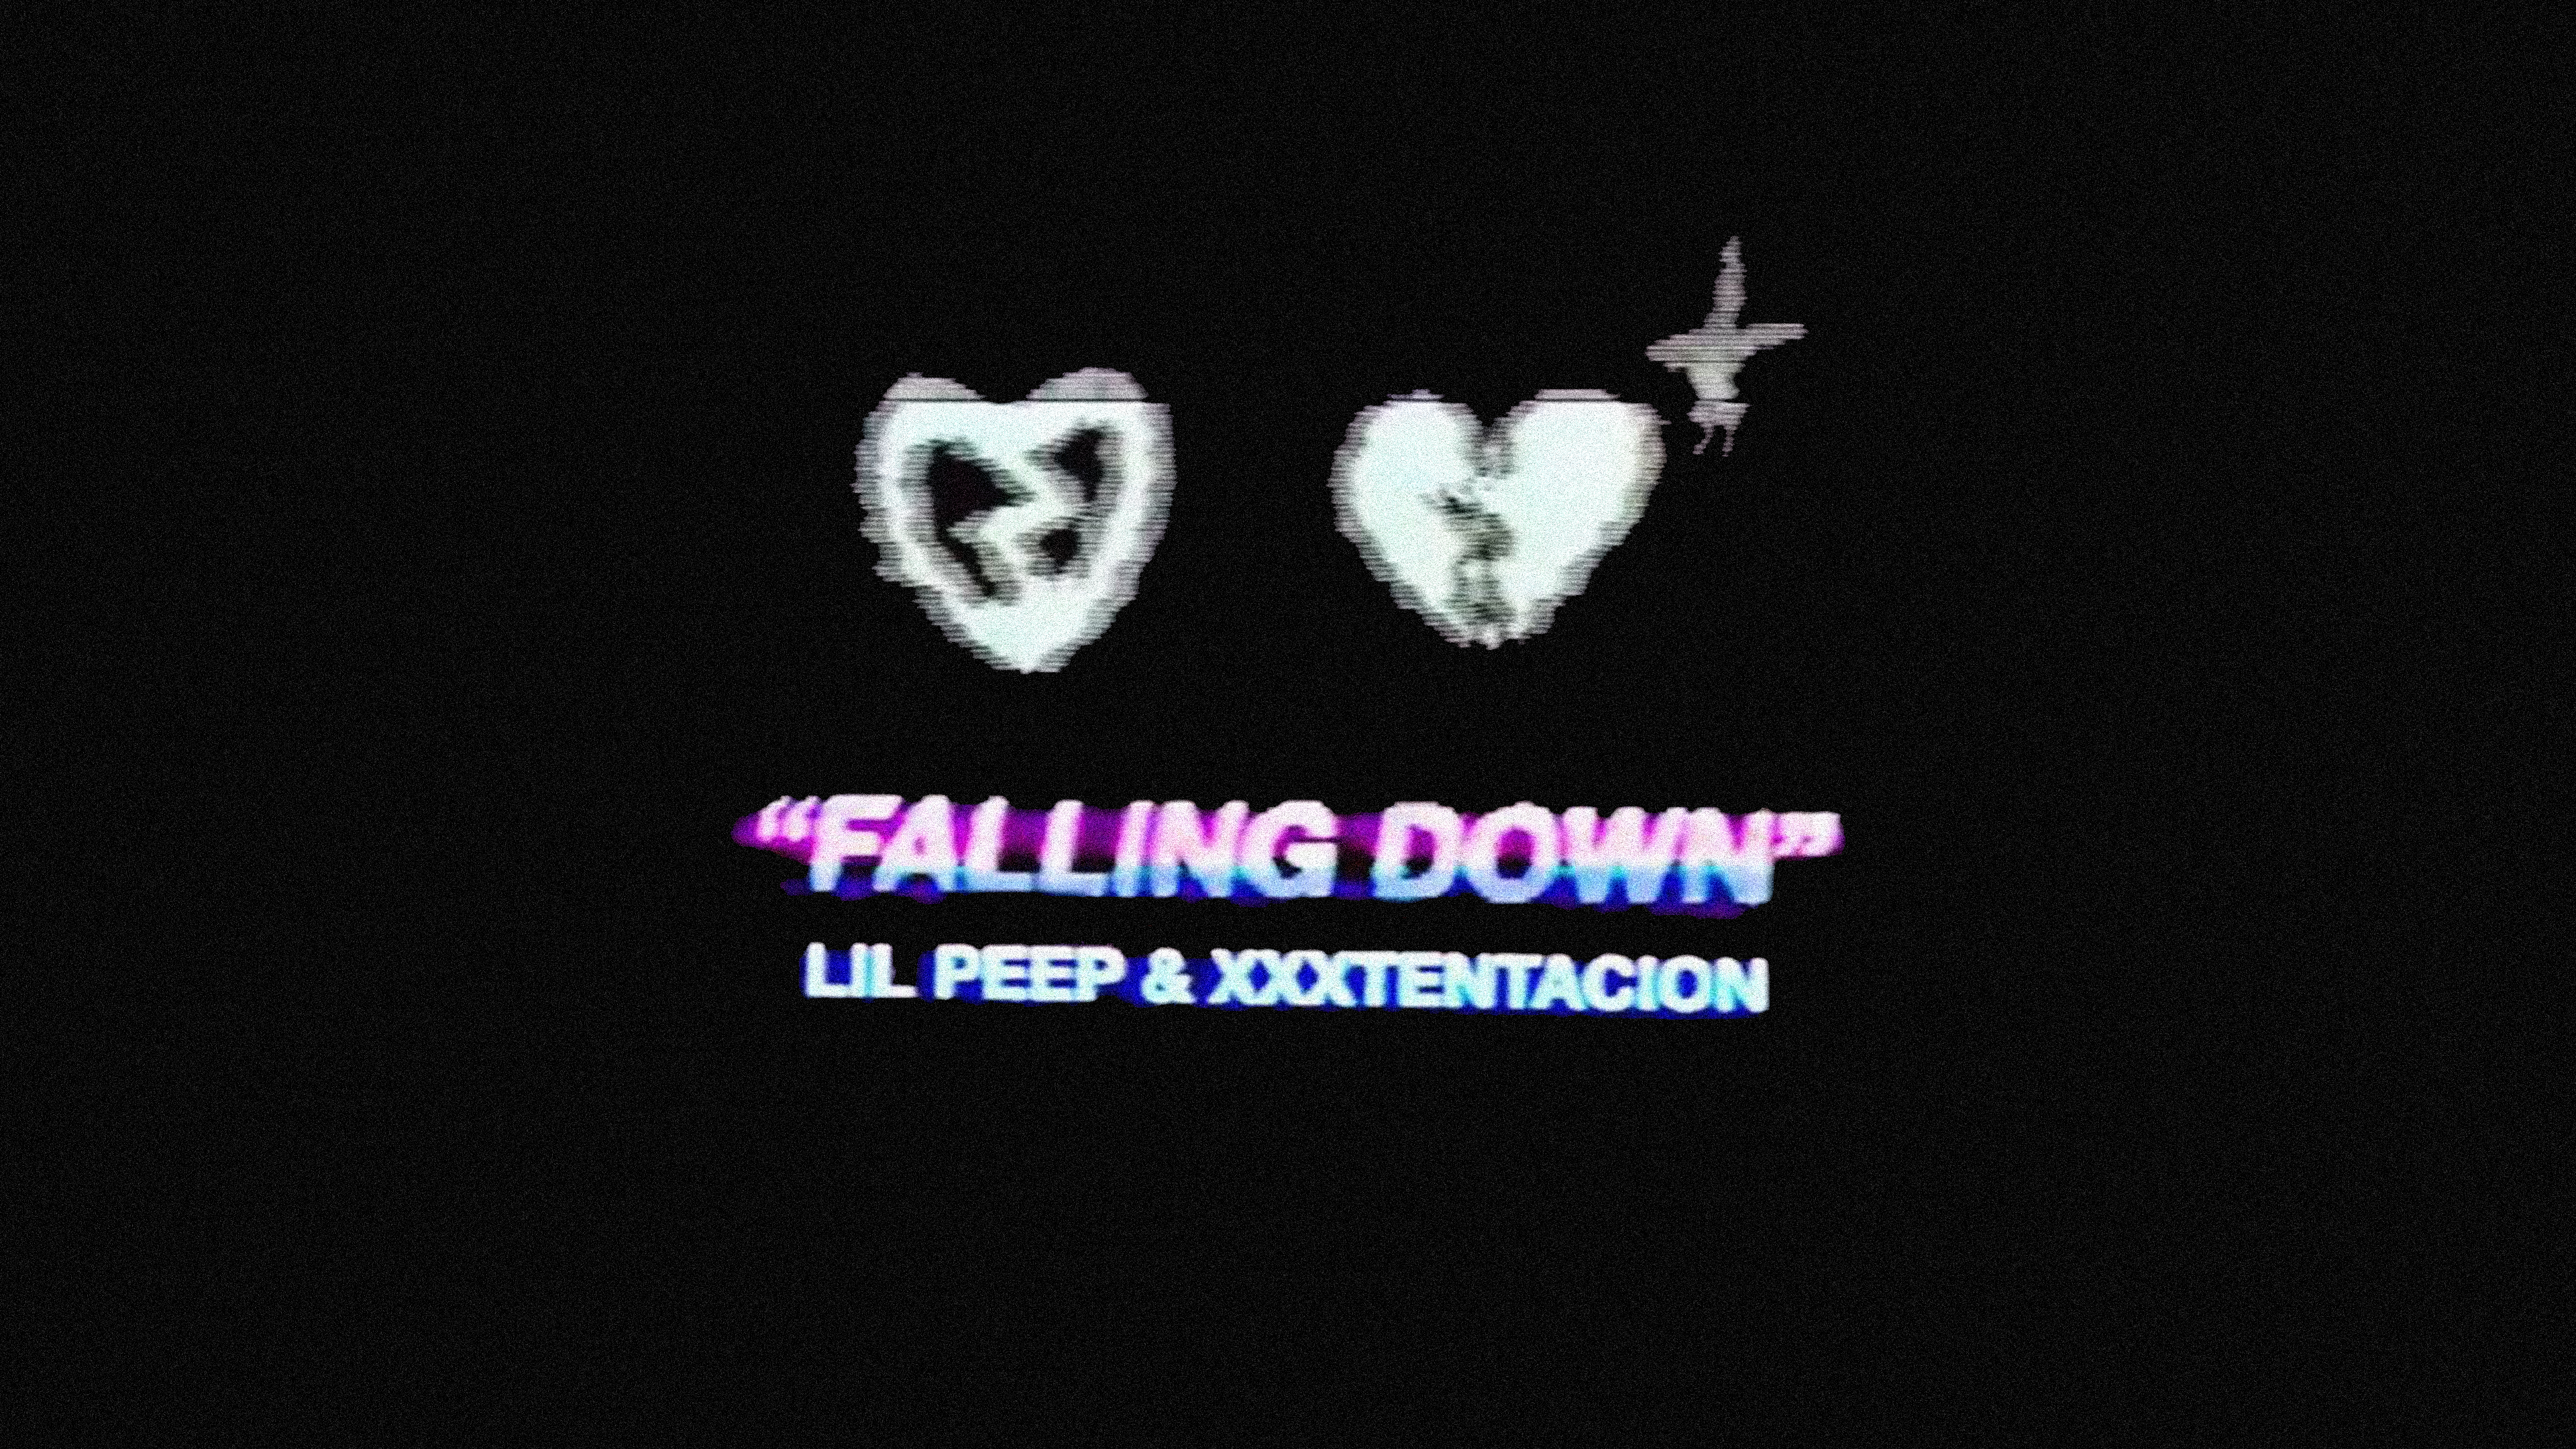 Lil Peep Xxxtentacion Falling Down Wallpaper By Me Rip To